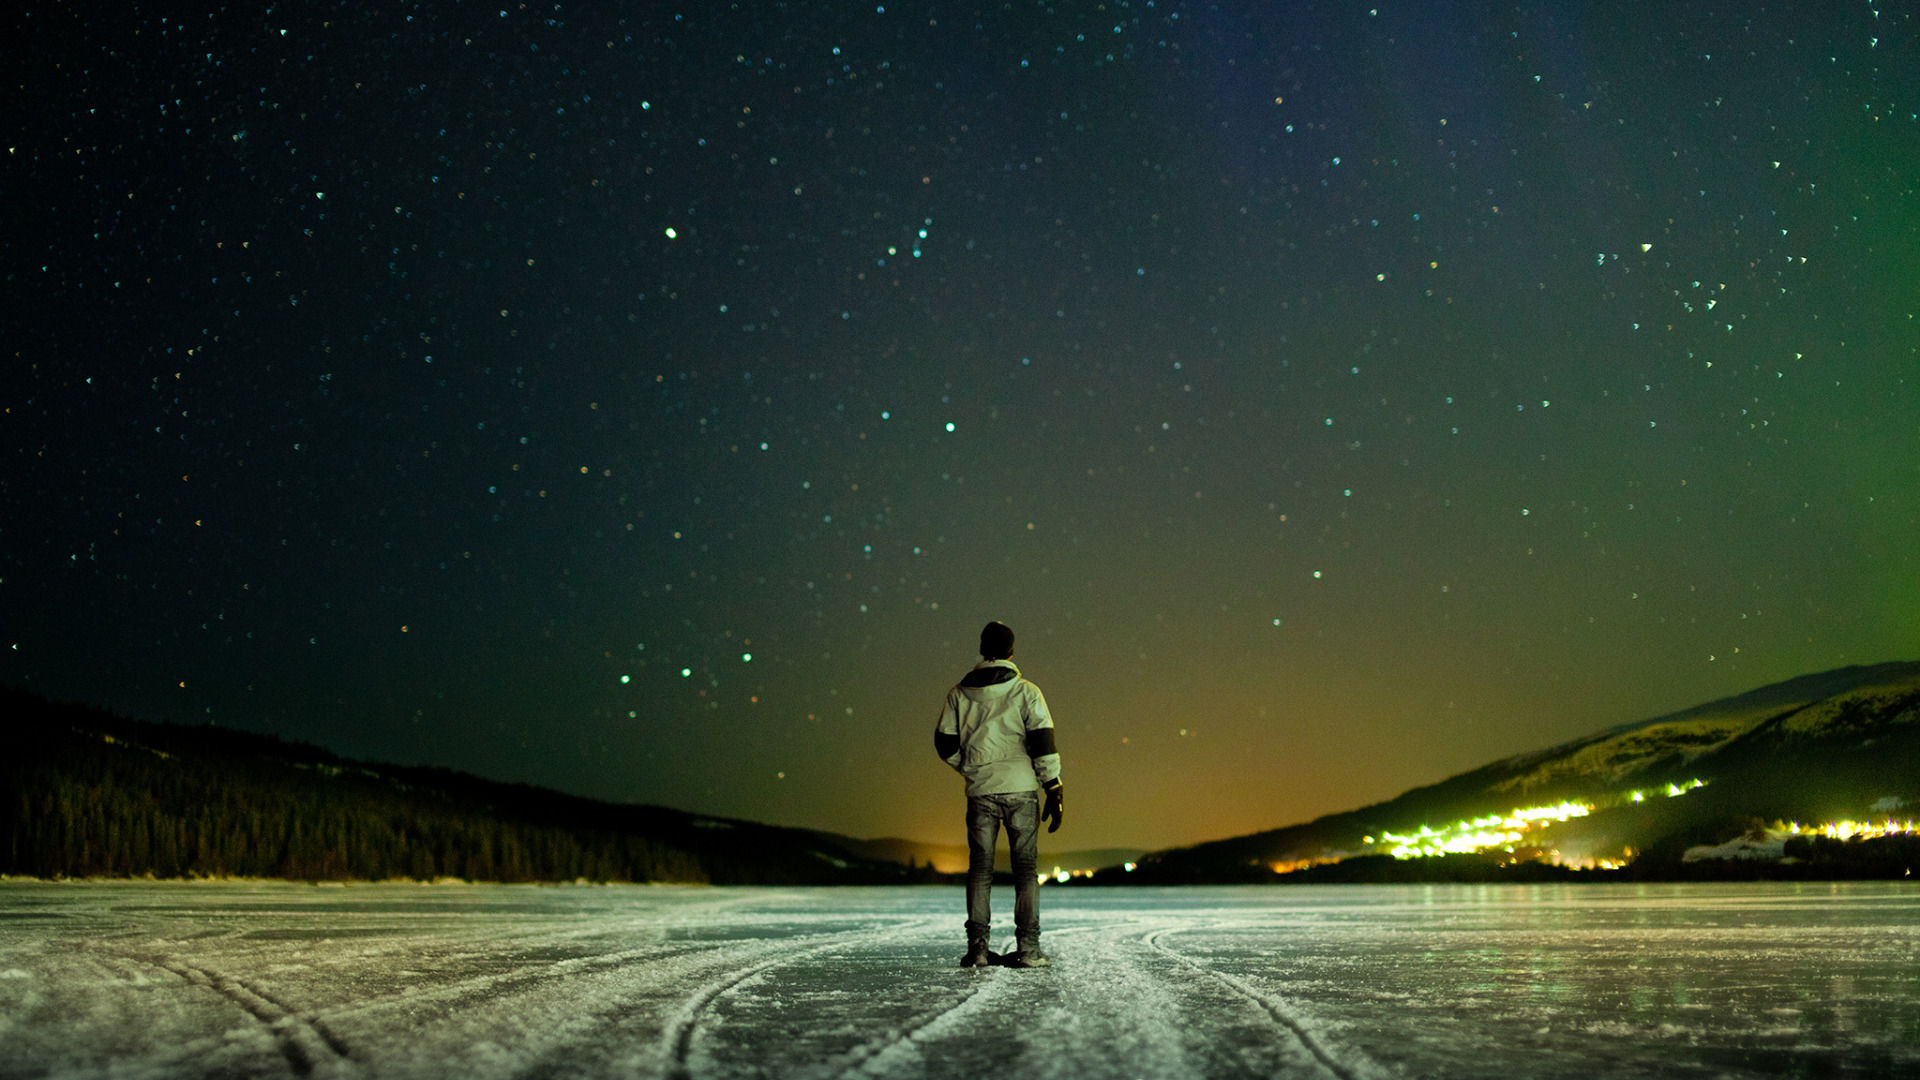 В темном небе звезды светят космонавт летит. Звездное небо и человек. Человек на фоне звездного неба. Одиночество в ночи. Одинокий человек.